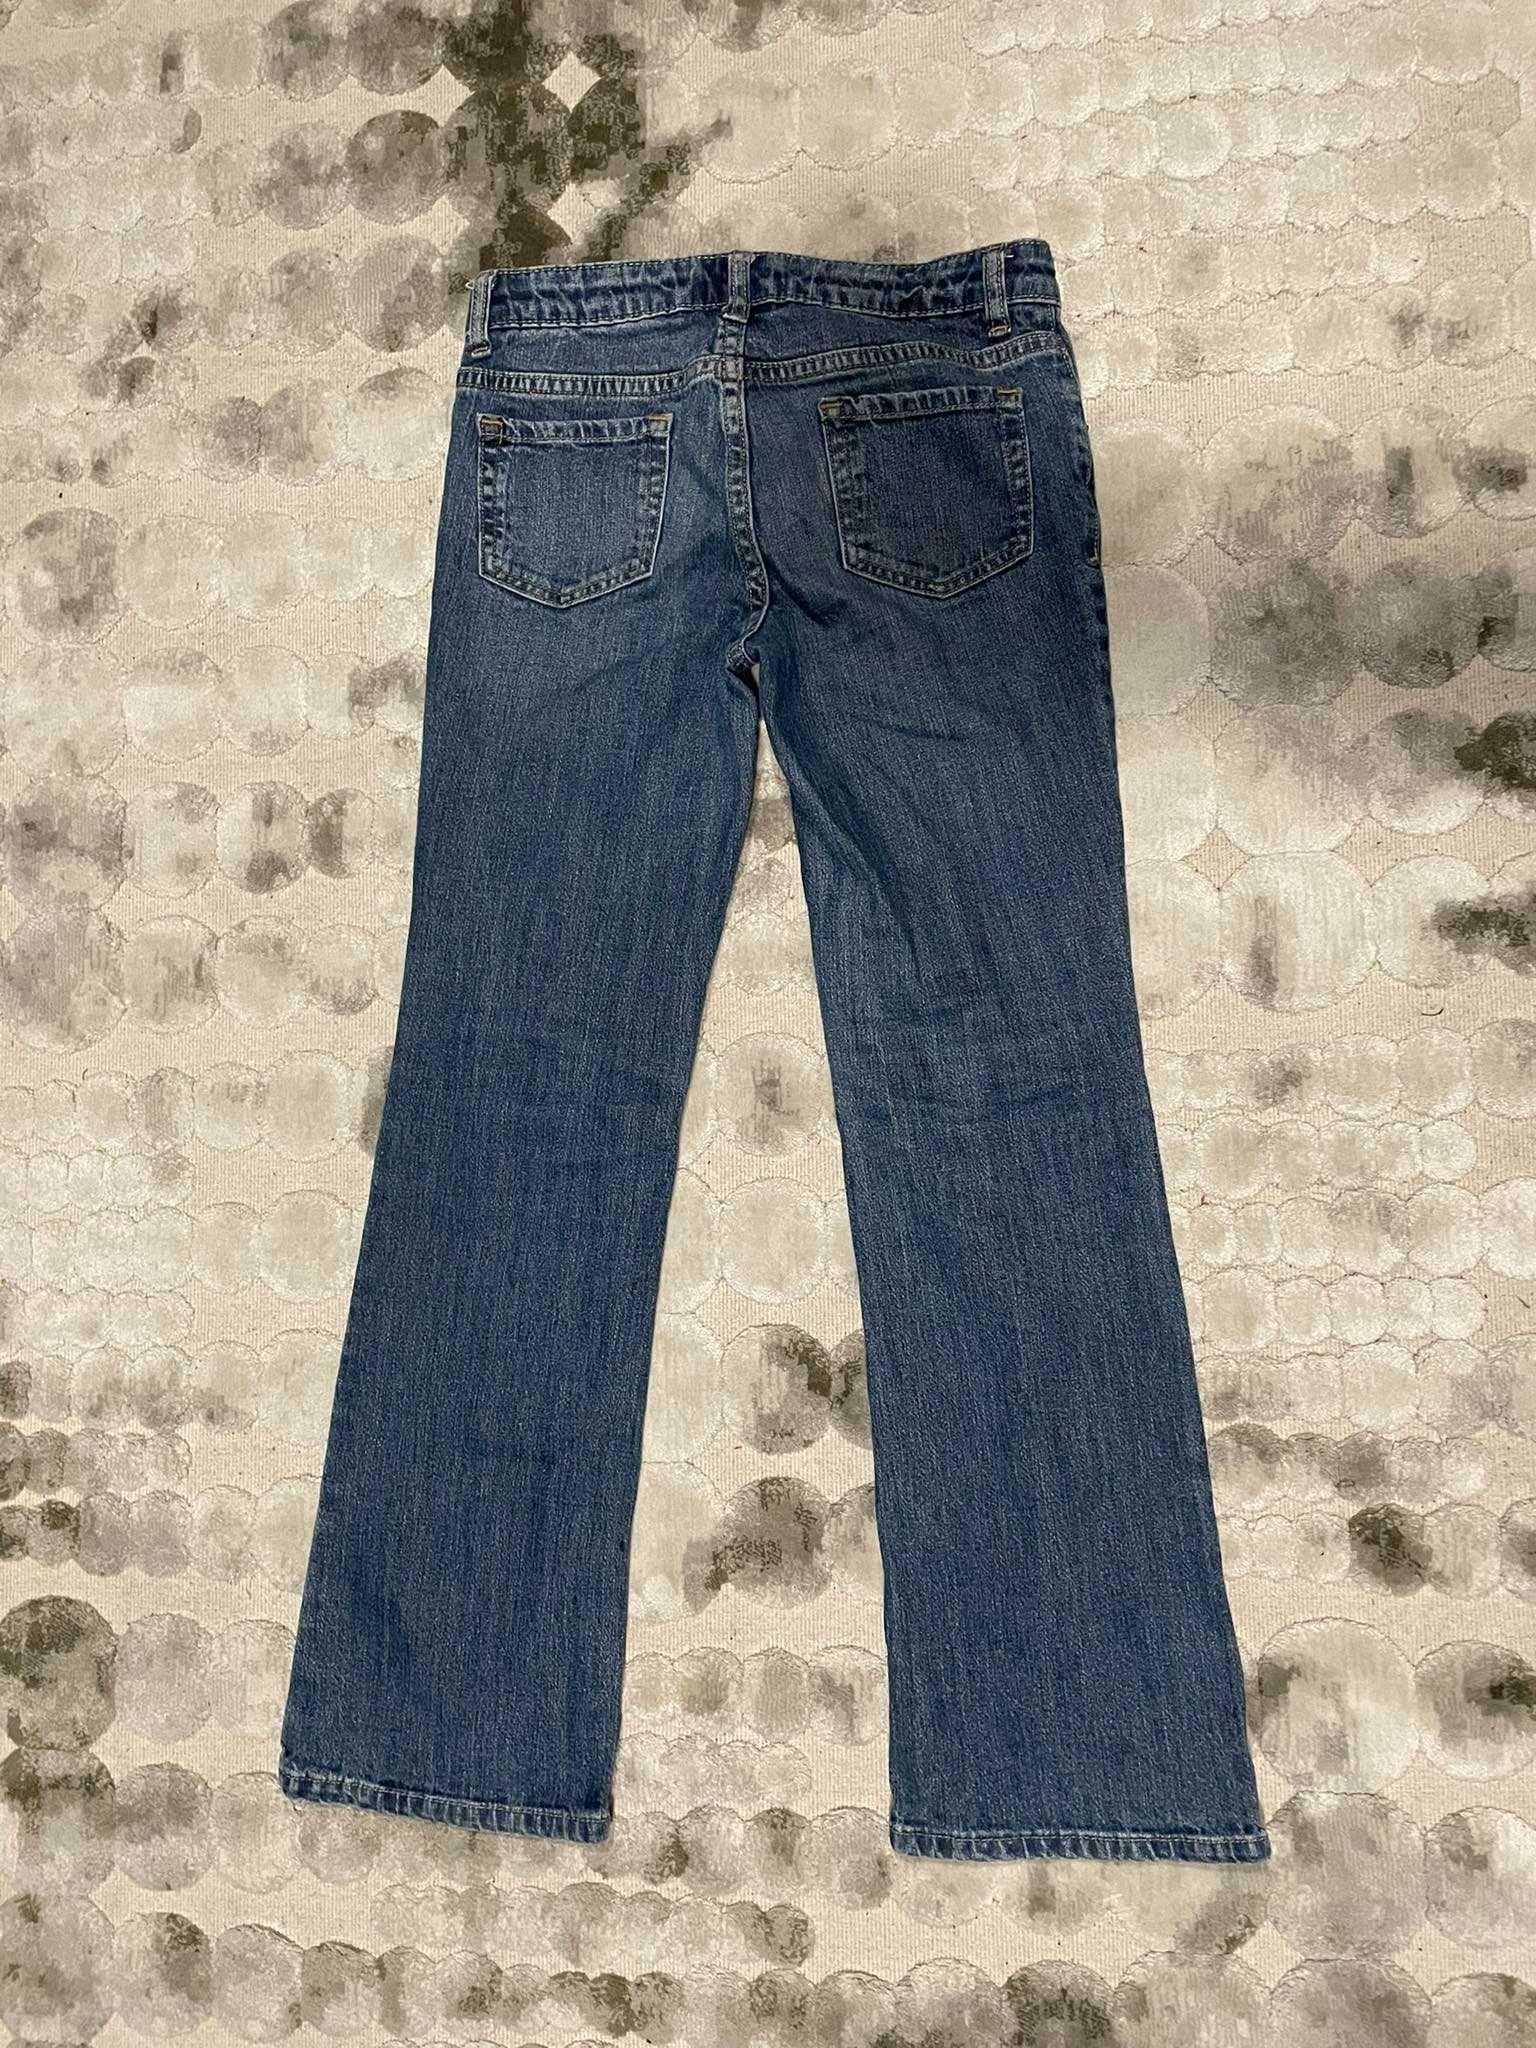 Cherokee jeansy spodnie chłopięce rozm. 152 cm 12 lat